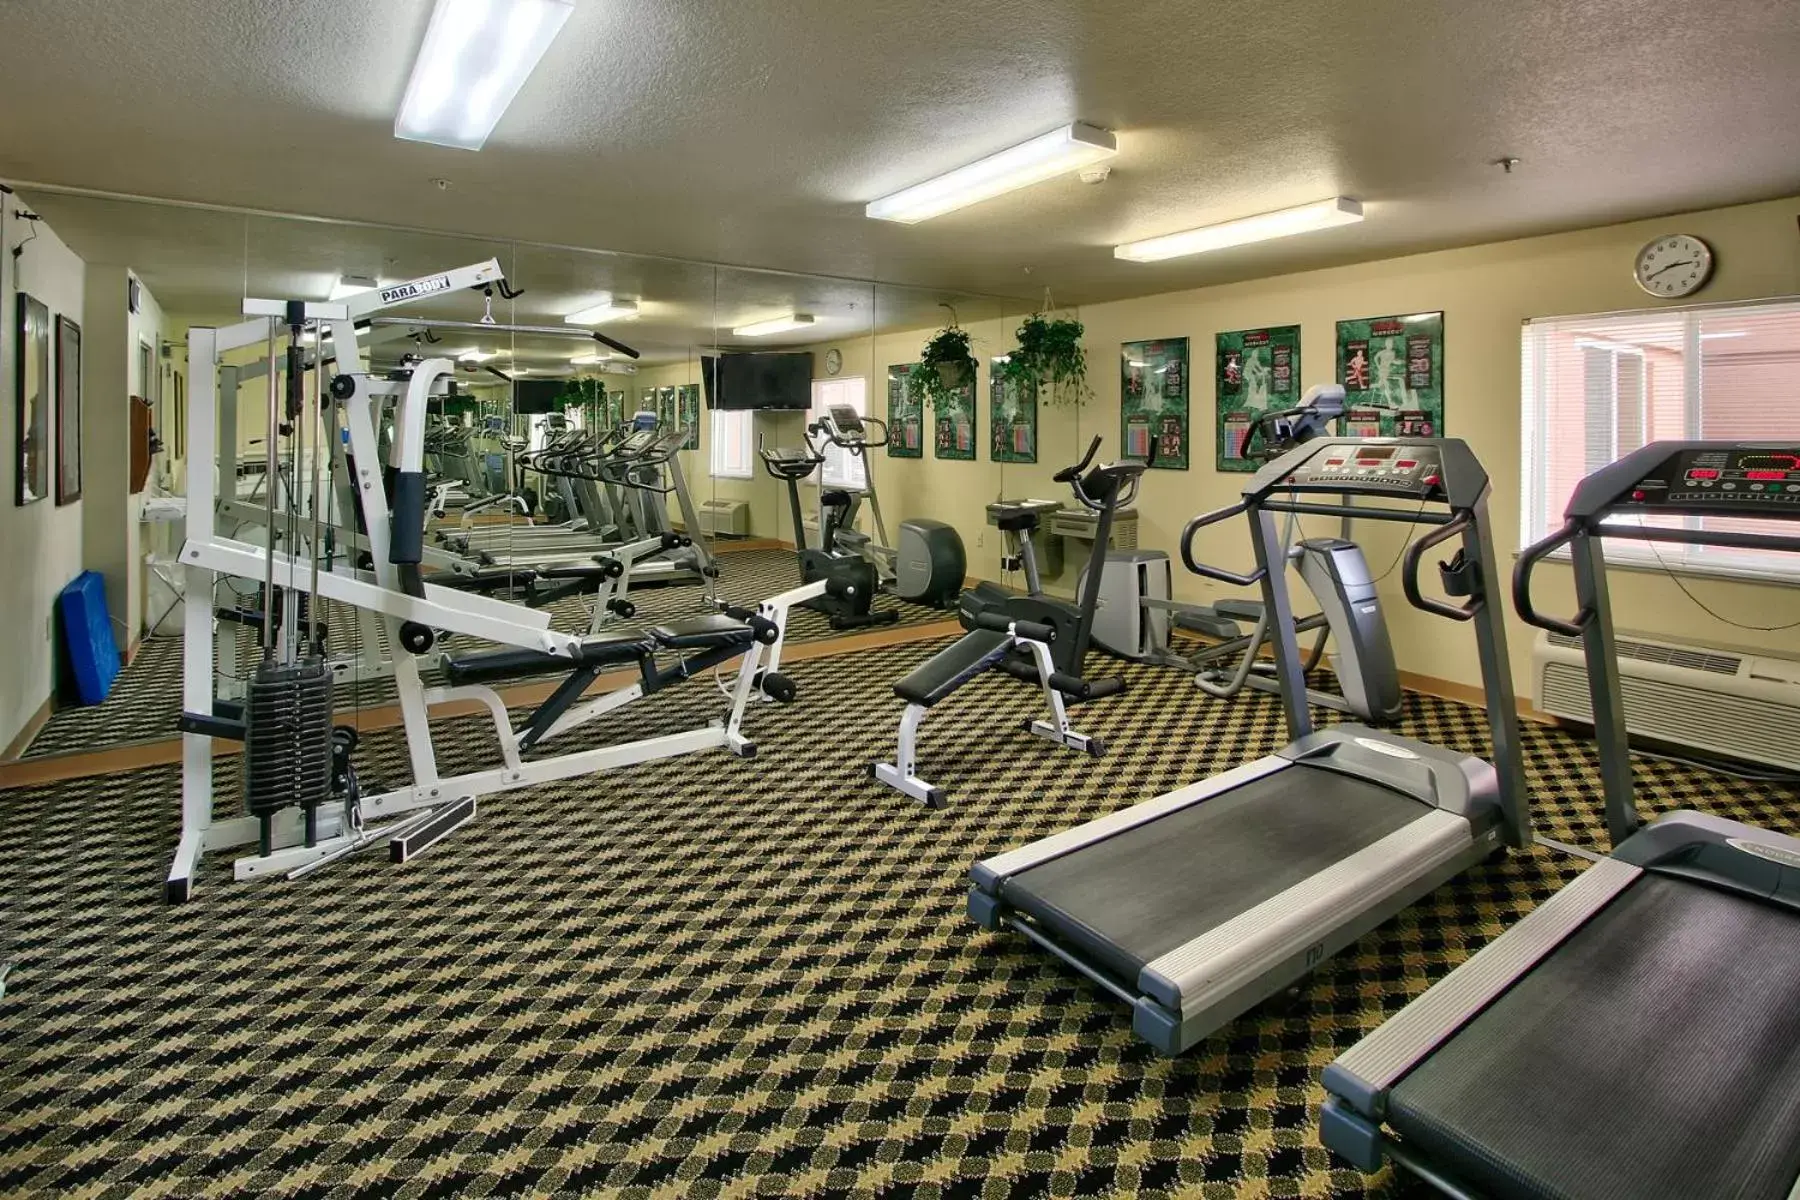 Fitness centre/facilities, Fitness Center/Facilities in MCM Elegante Suites